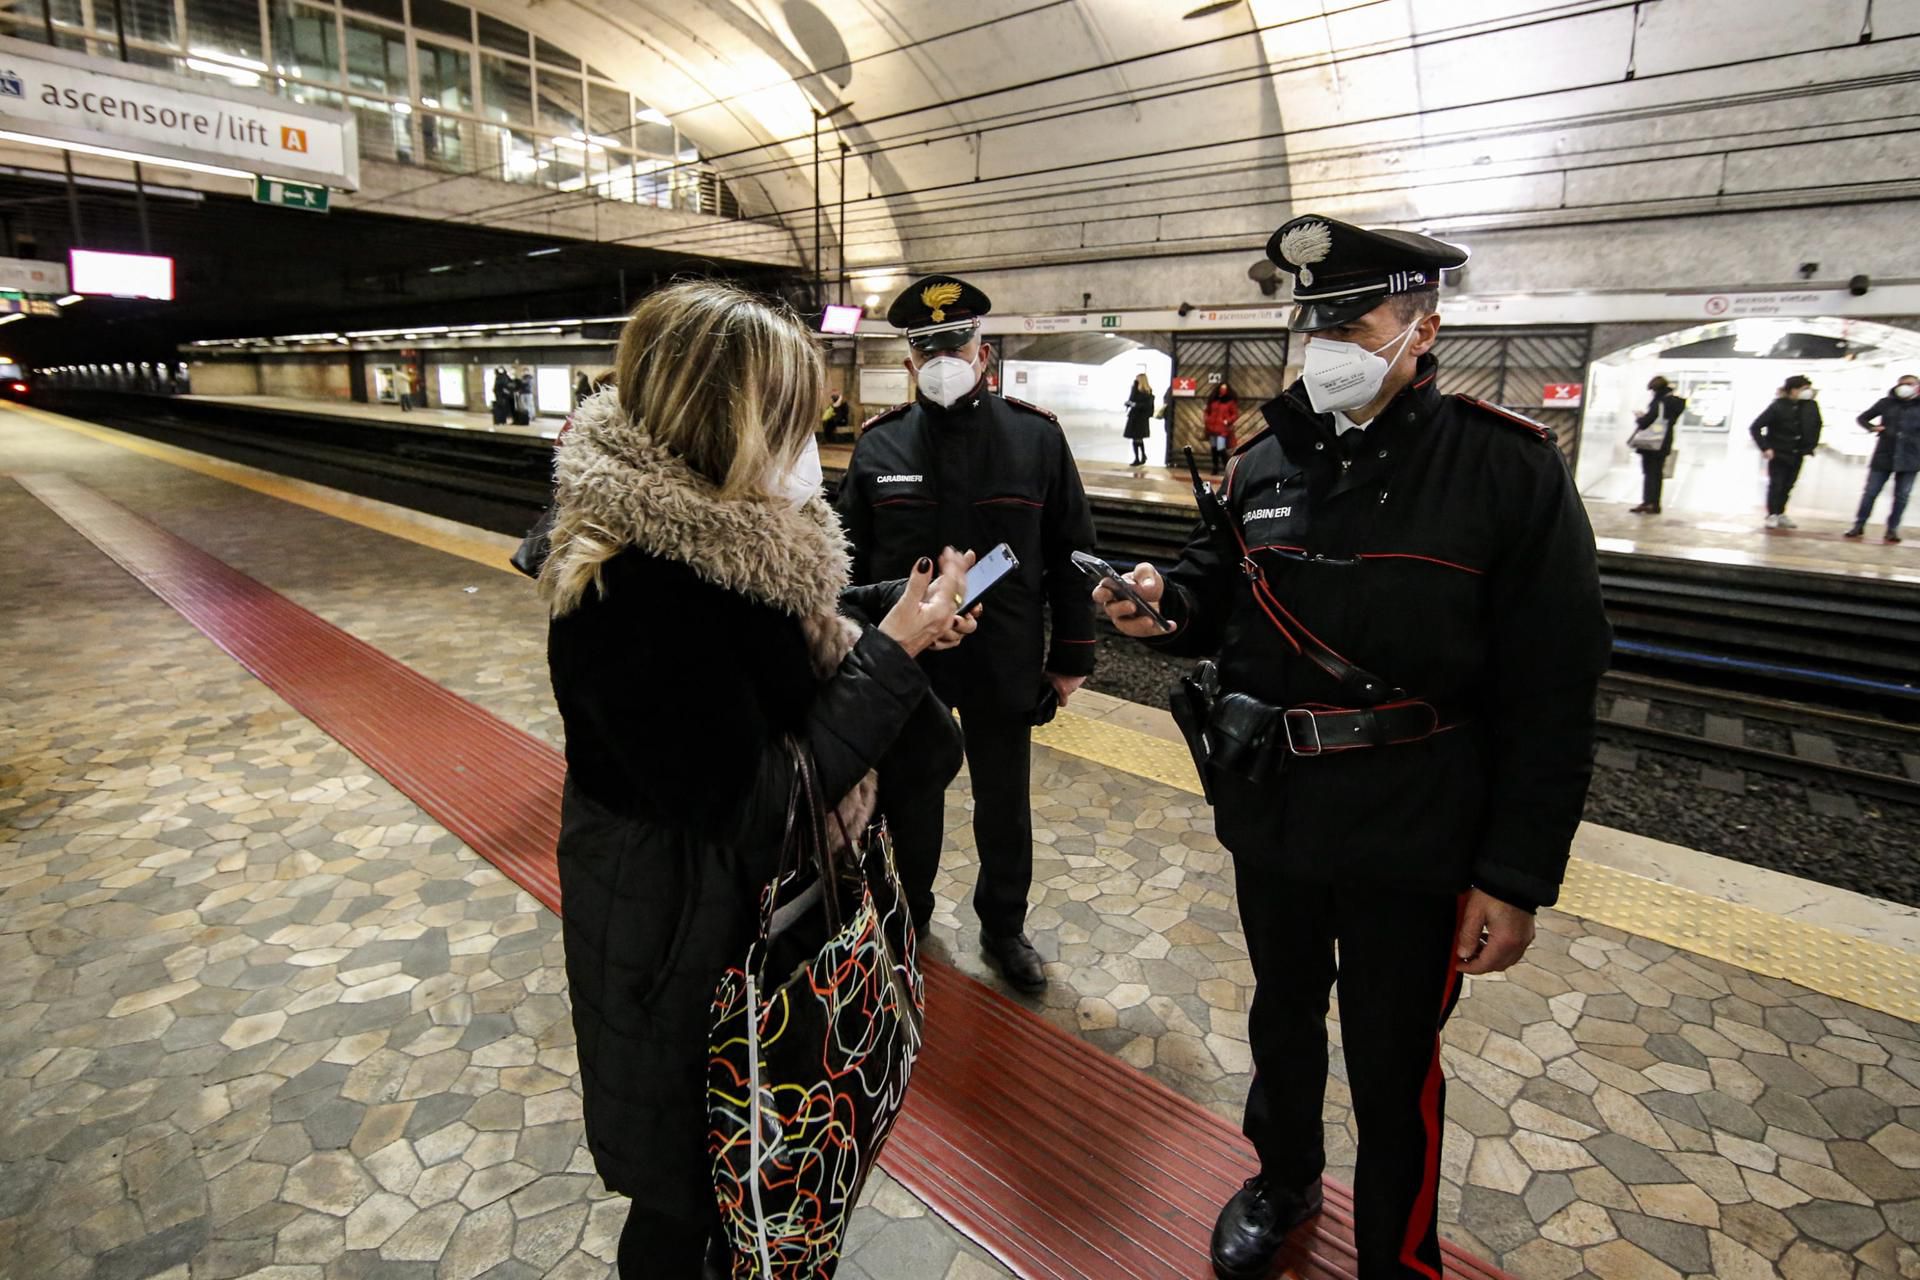 Italia despliega un operativo policial "extraordinario" en la estación de tren de Roma